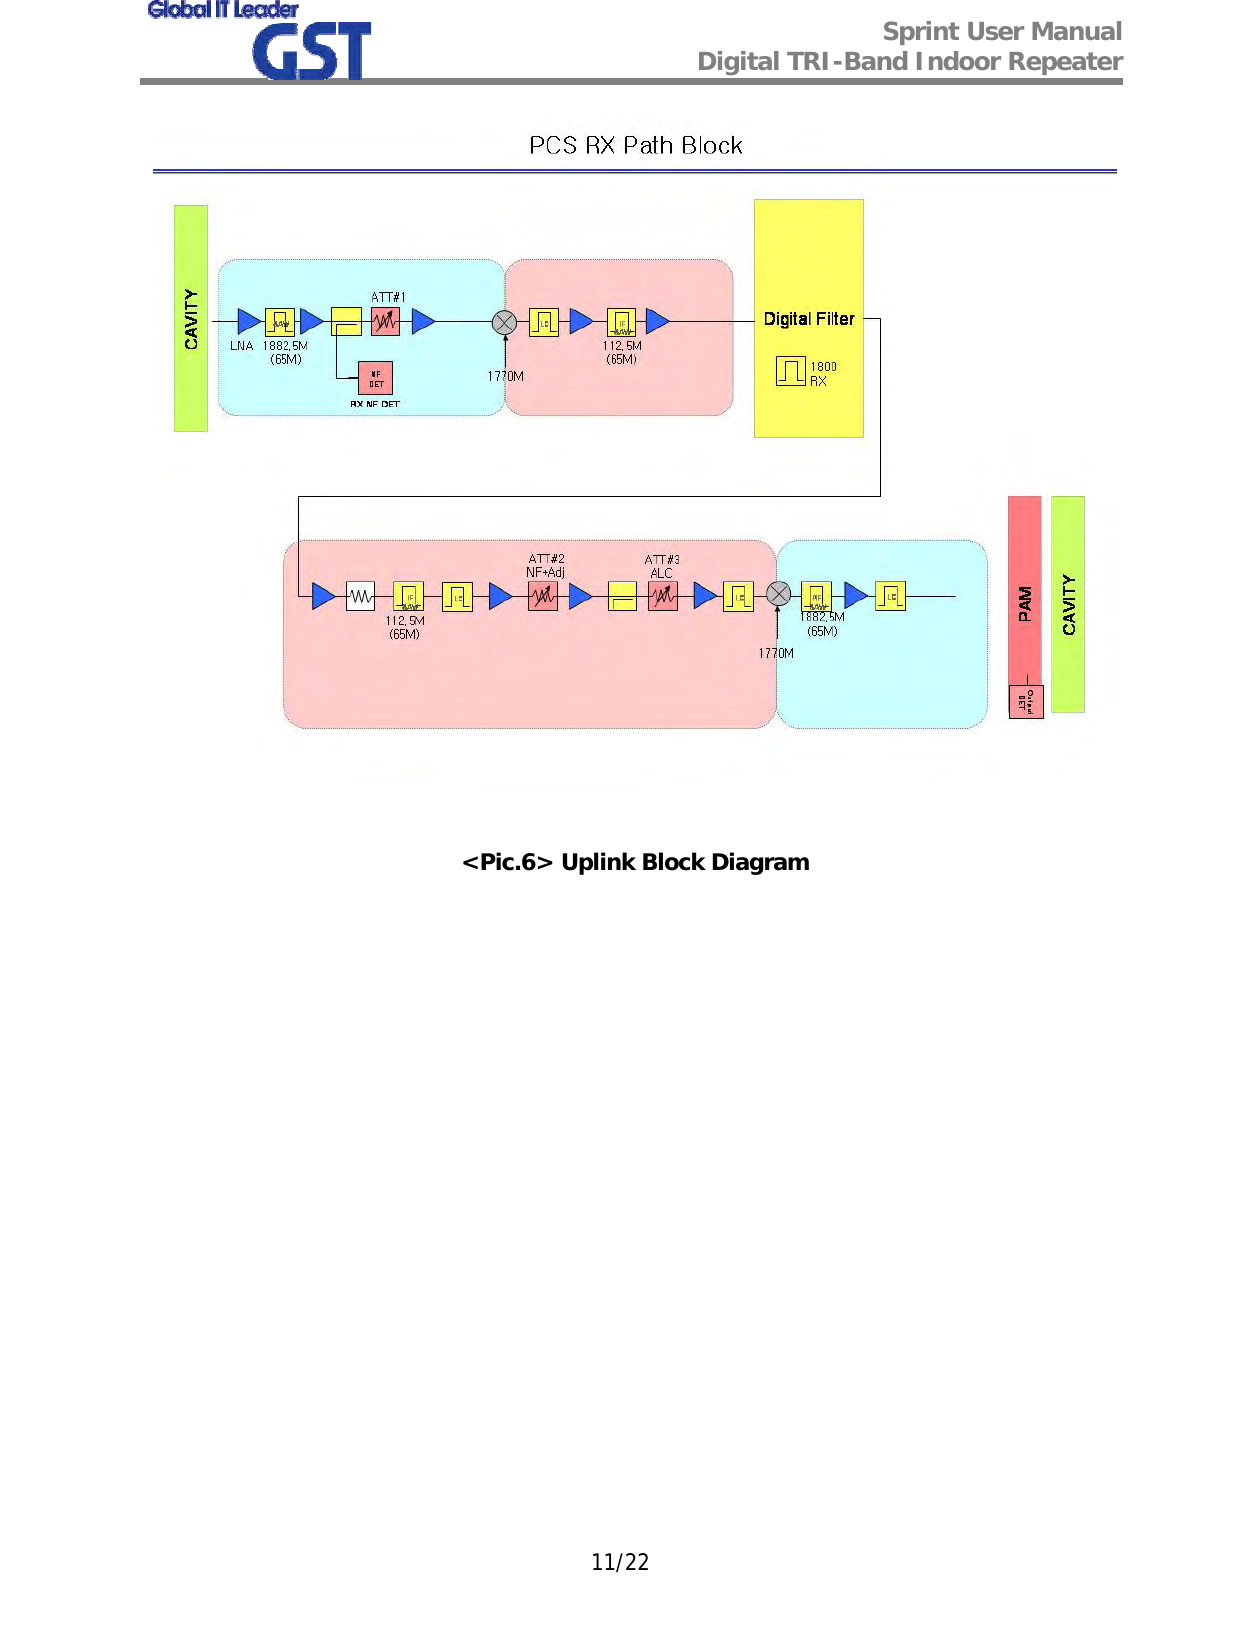  Sprint User Manual Digital TRI-Band Indoor Repeater   11/22  &lt;Pic.6&gt; Uplink Block Diagram             